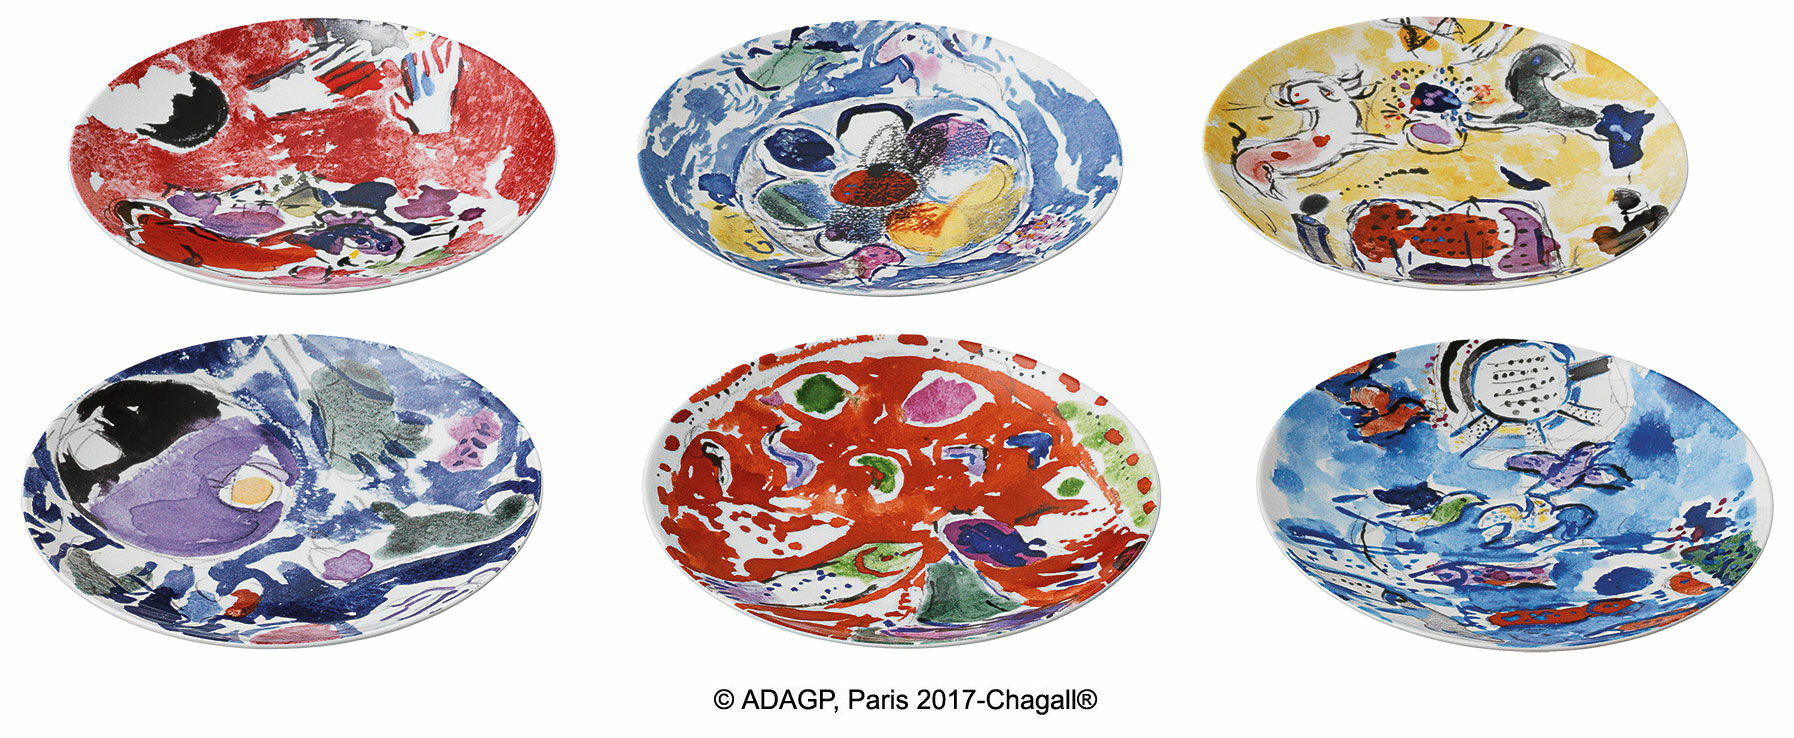 Les Vitraux d'Hadassah par Bernardaud - Ensemble de 6 assiettes avec motifs de l'artiste, porcelaine von Marc Chagall